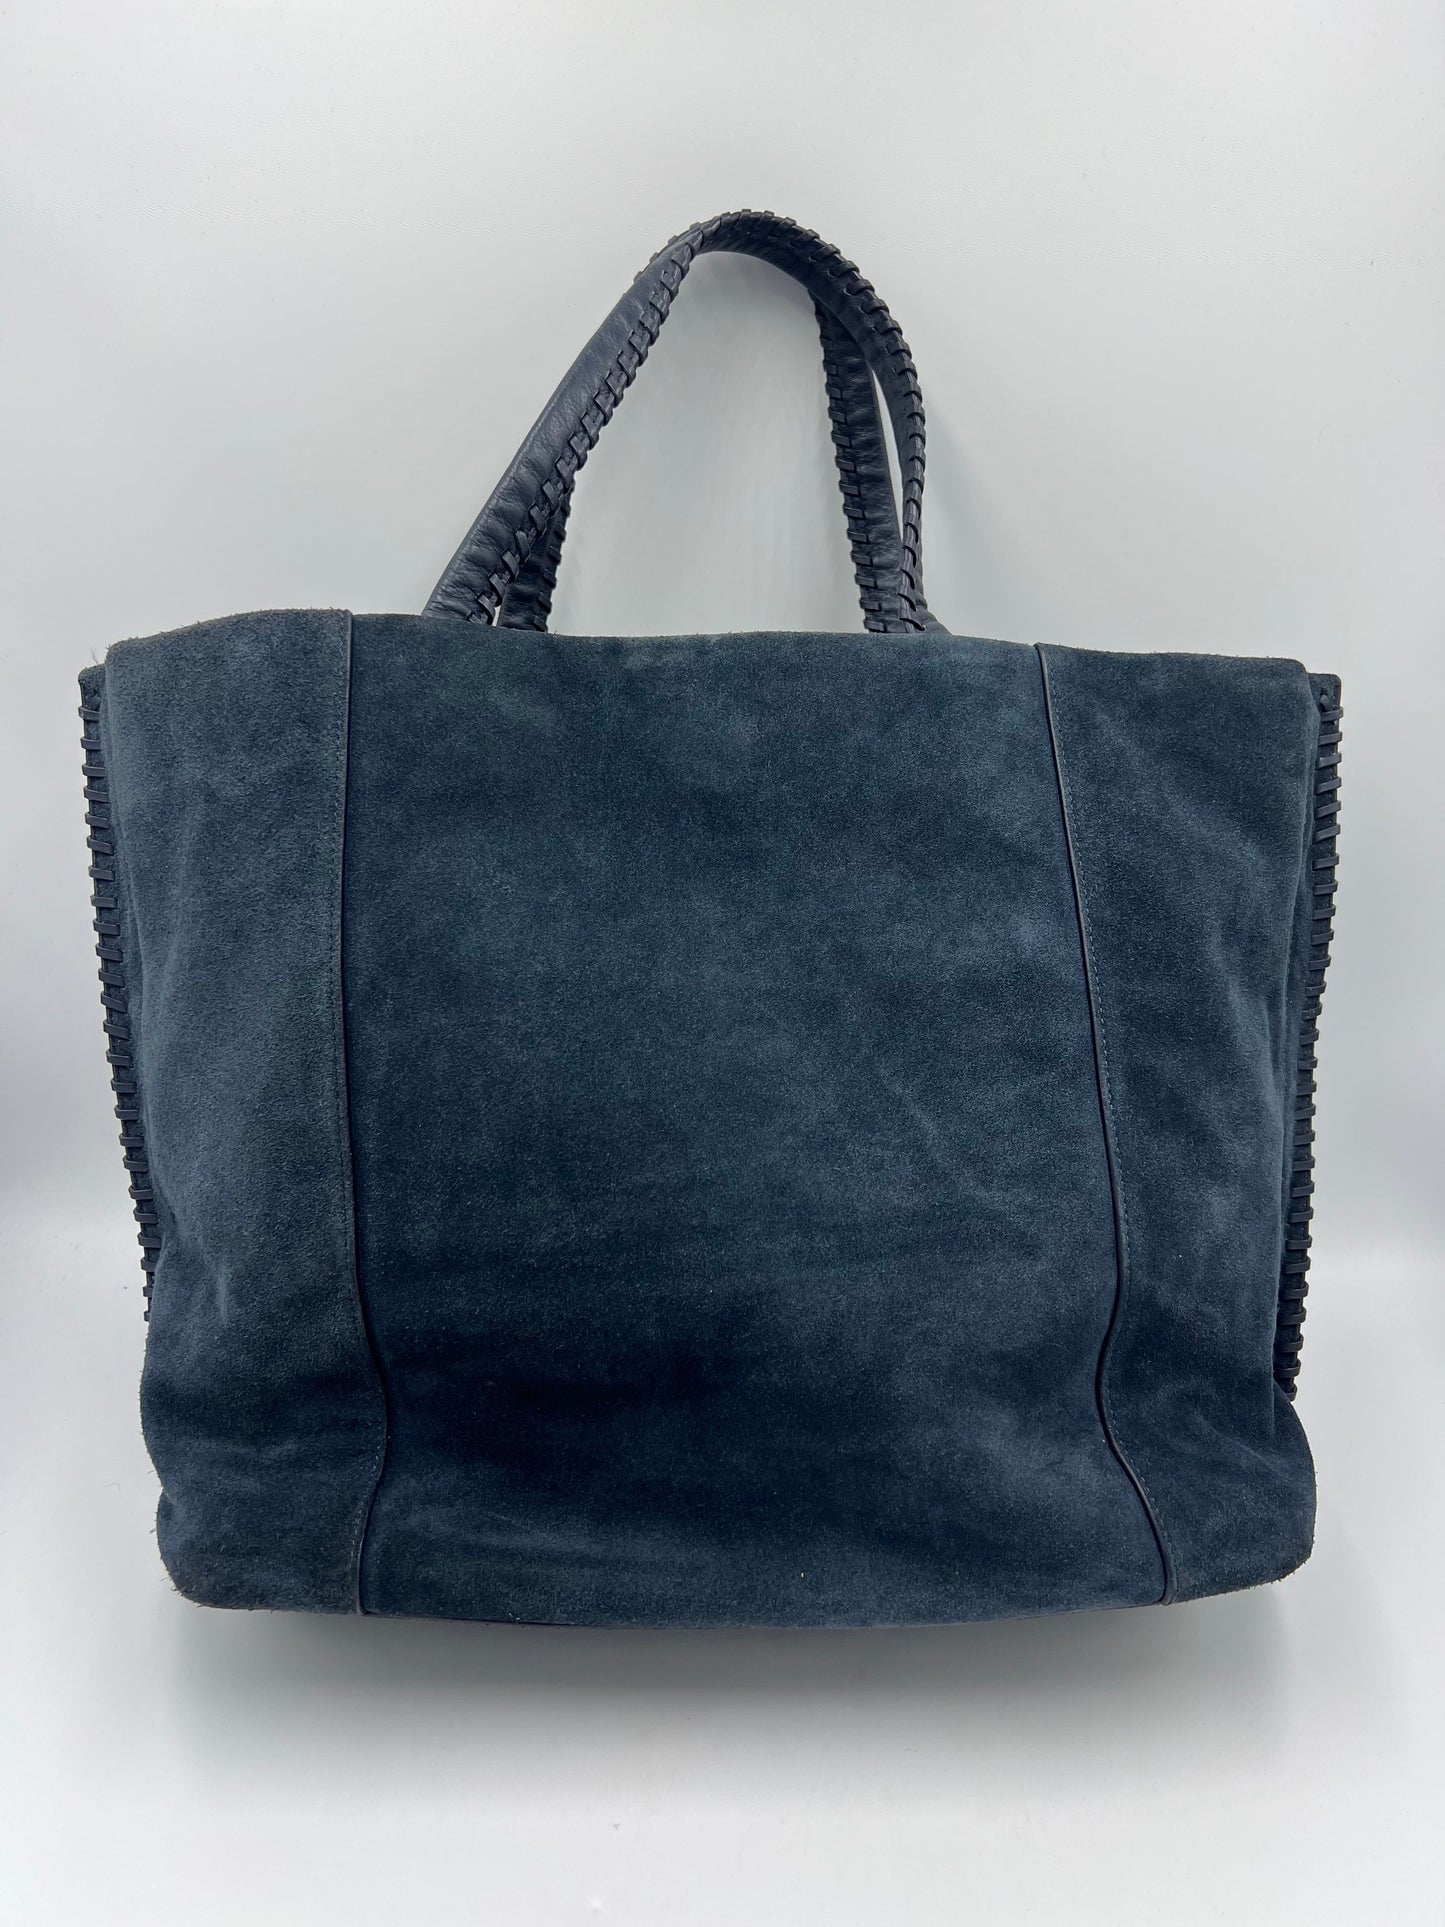 Handbag Designer By All Saints